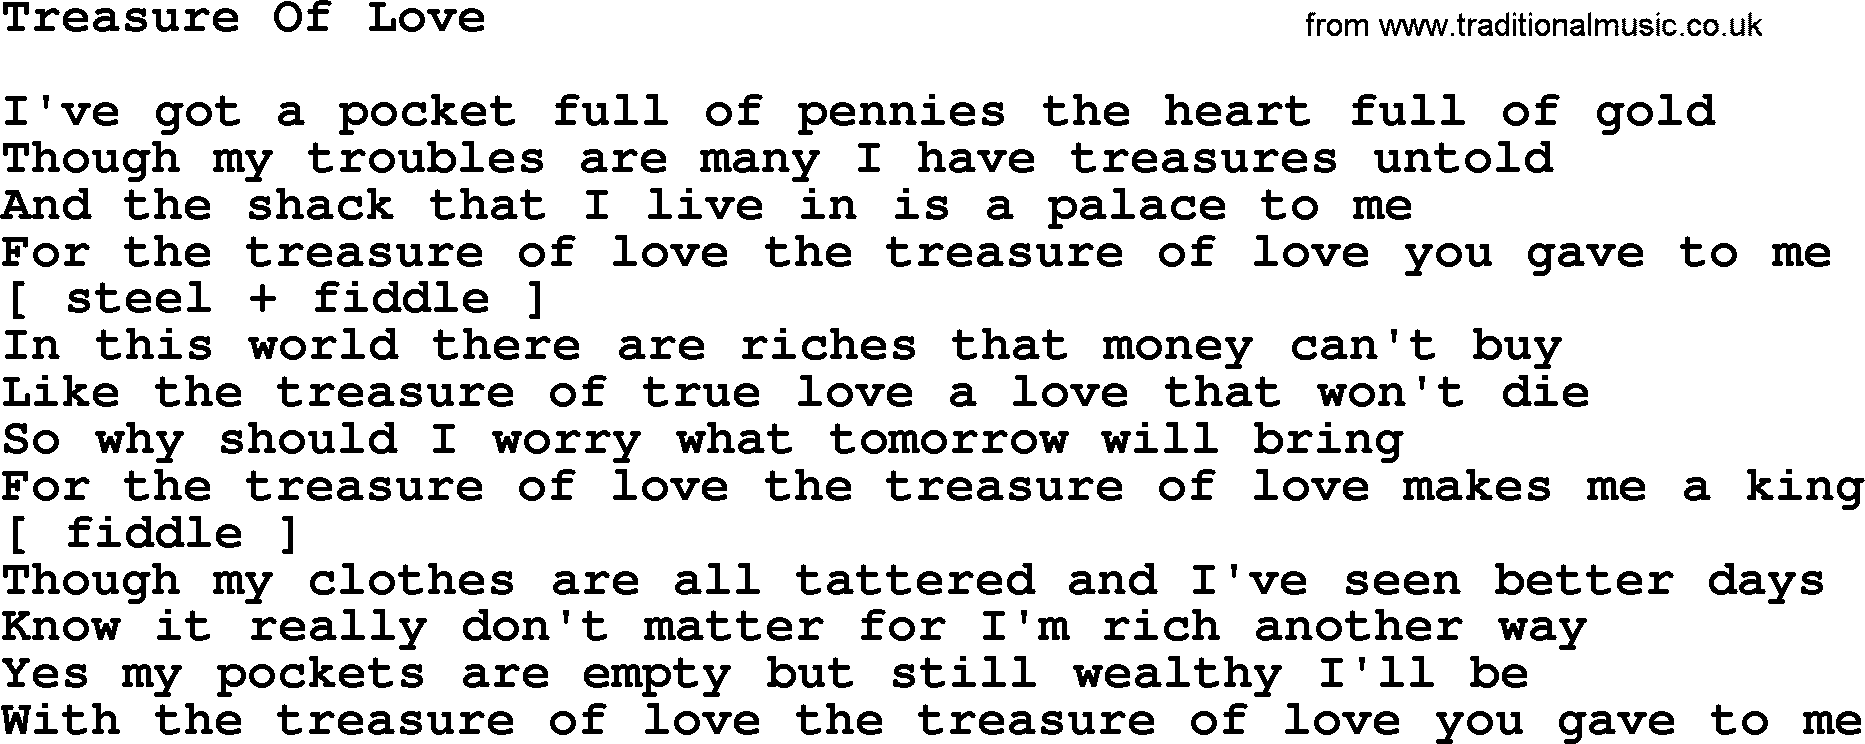 George Jones song: Treasure Of Love, lyrics